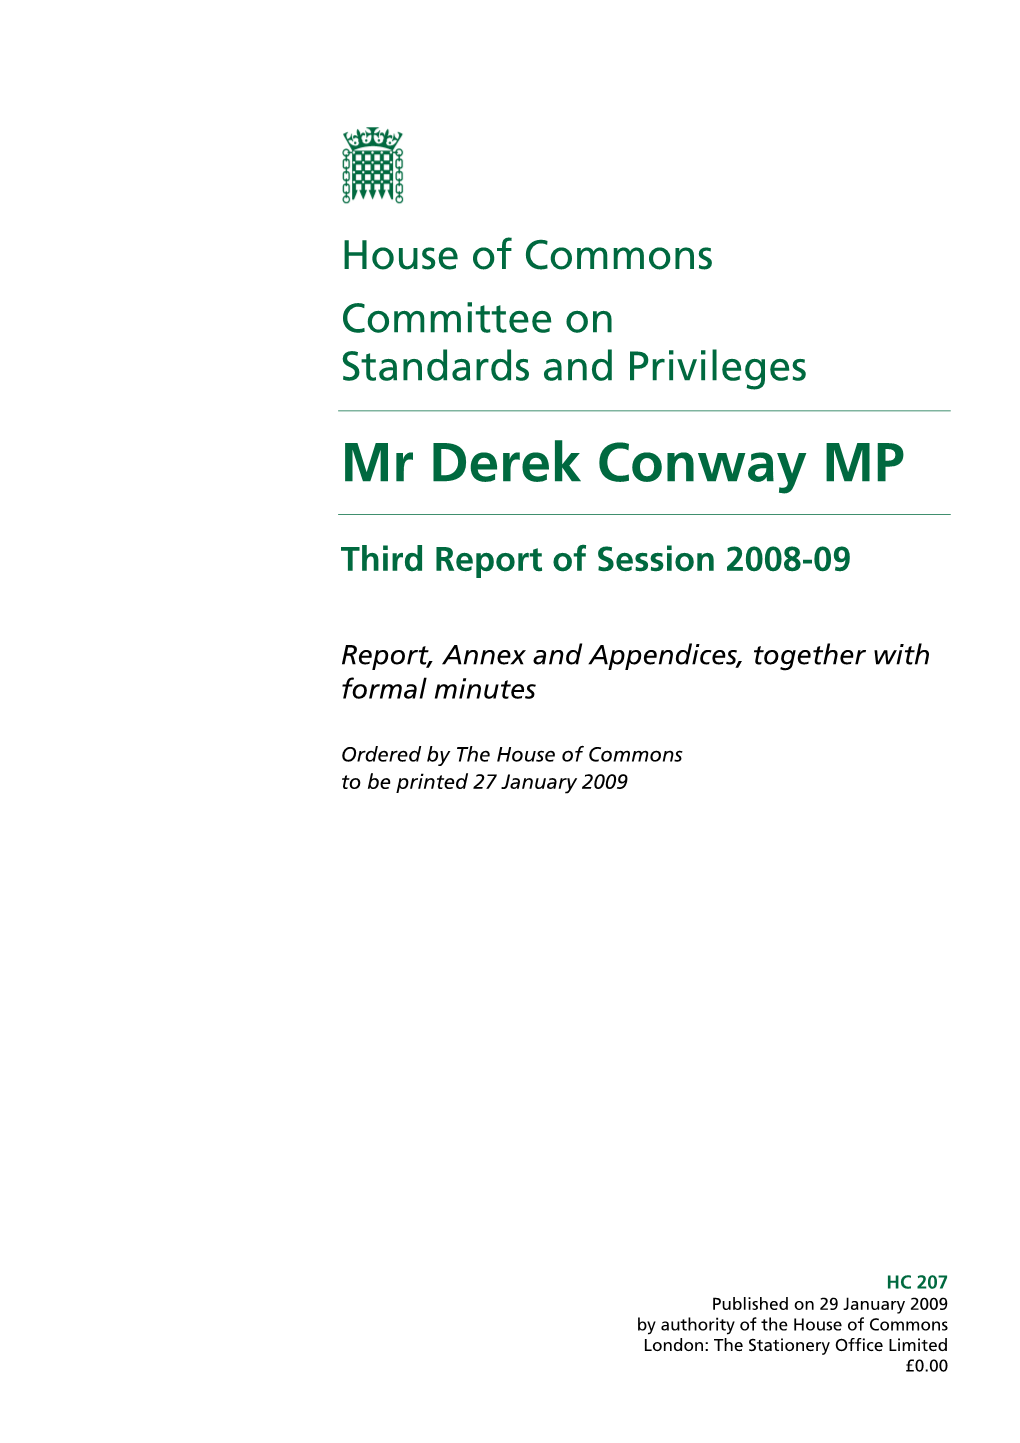 Mr Derek Conway MP